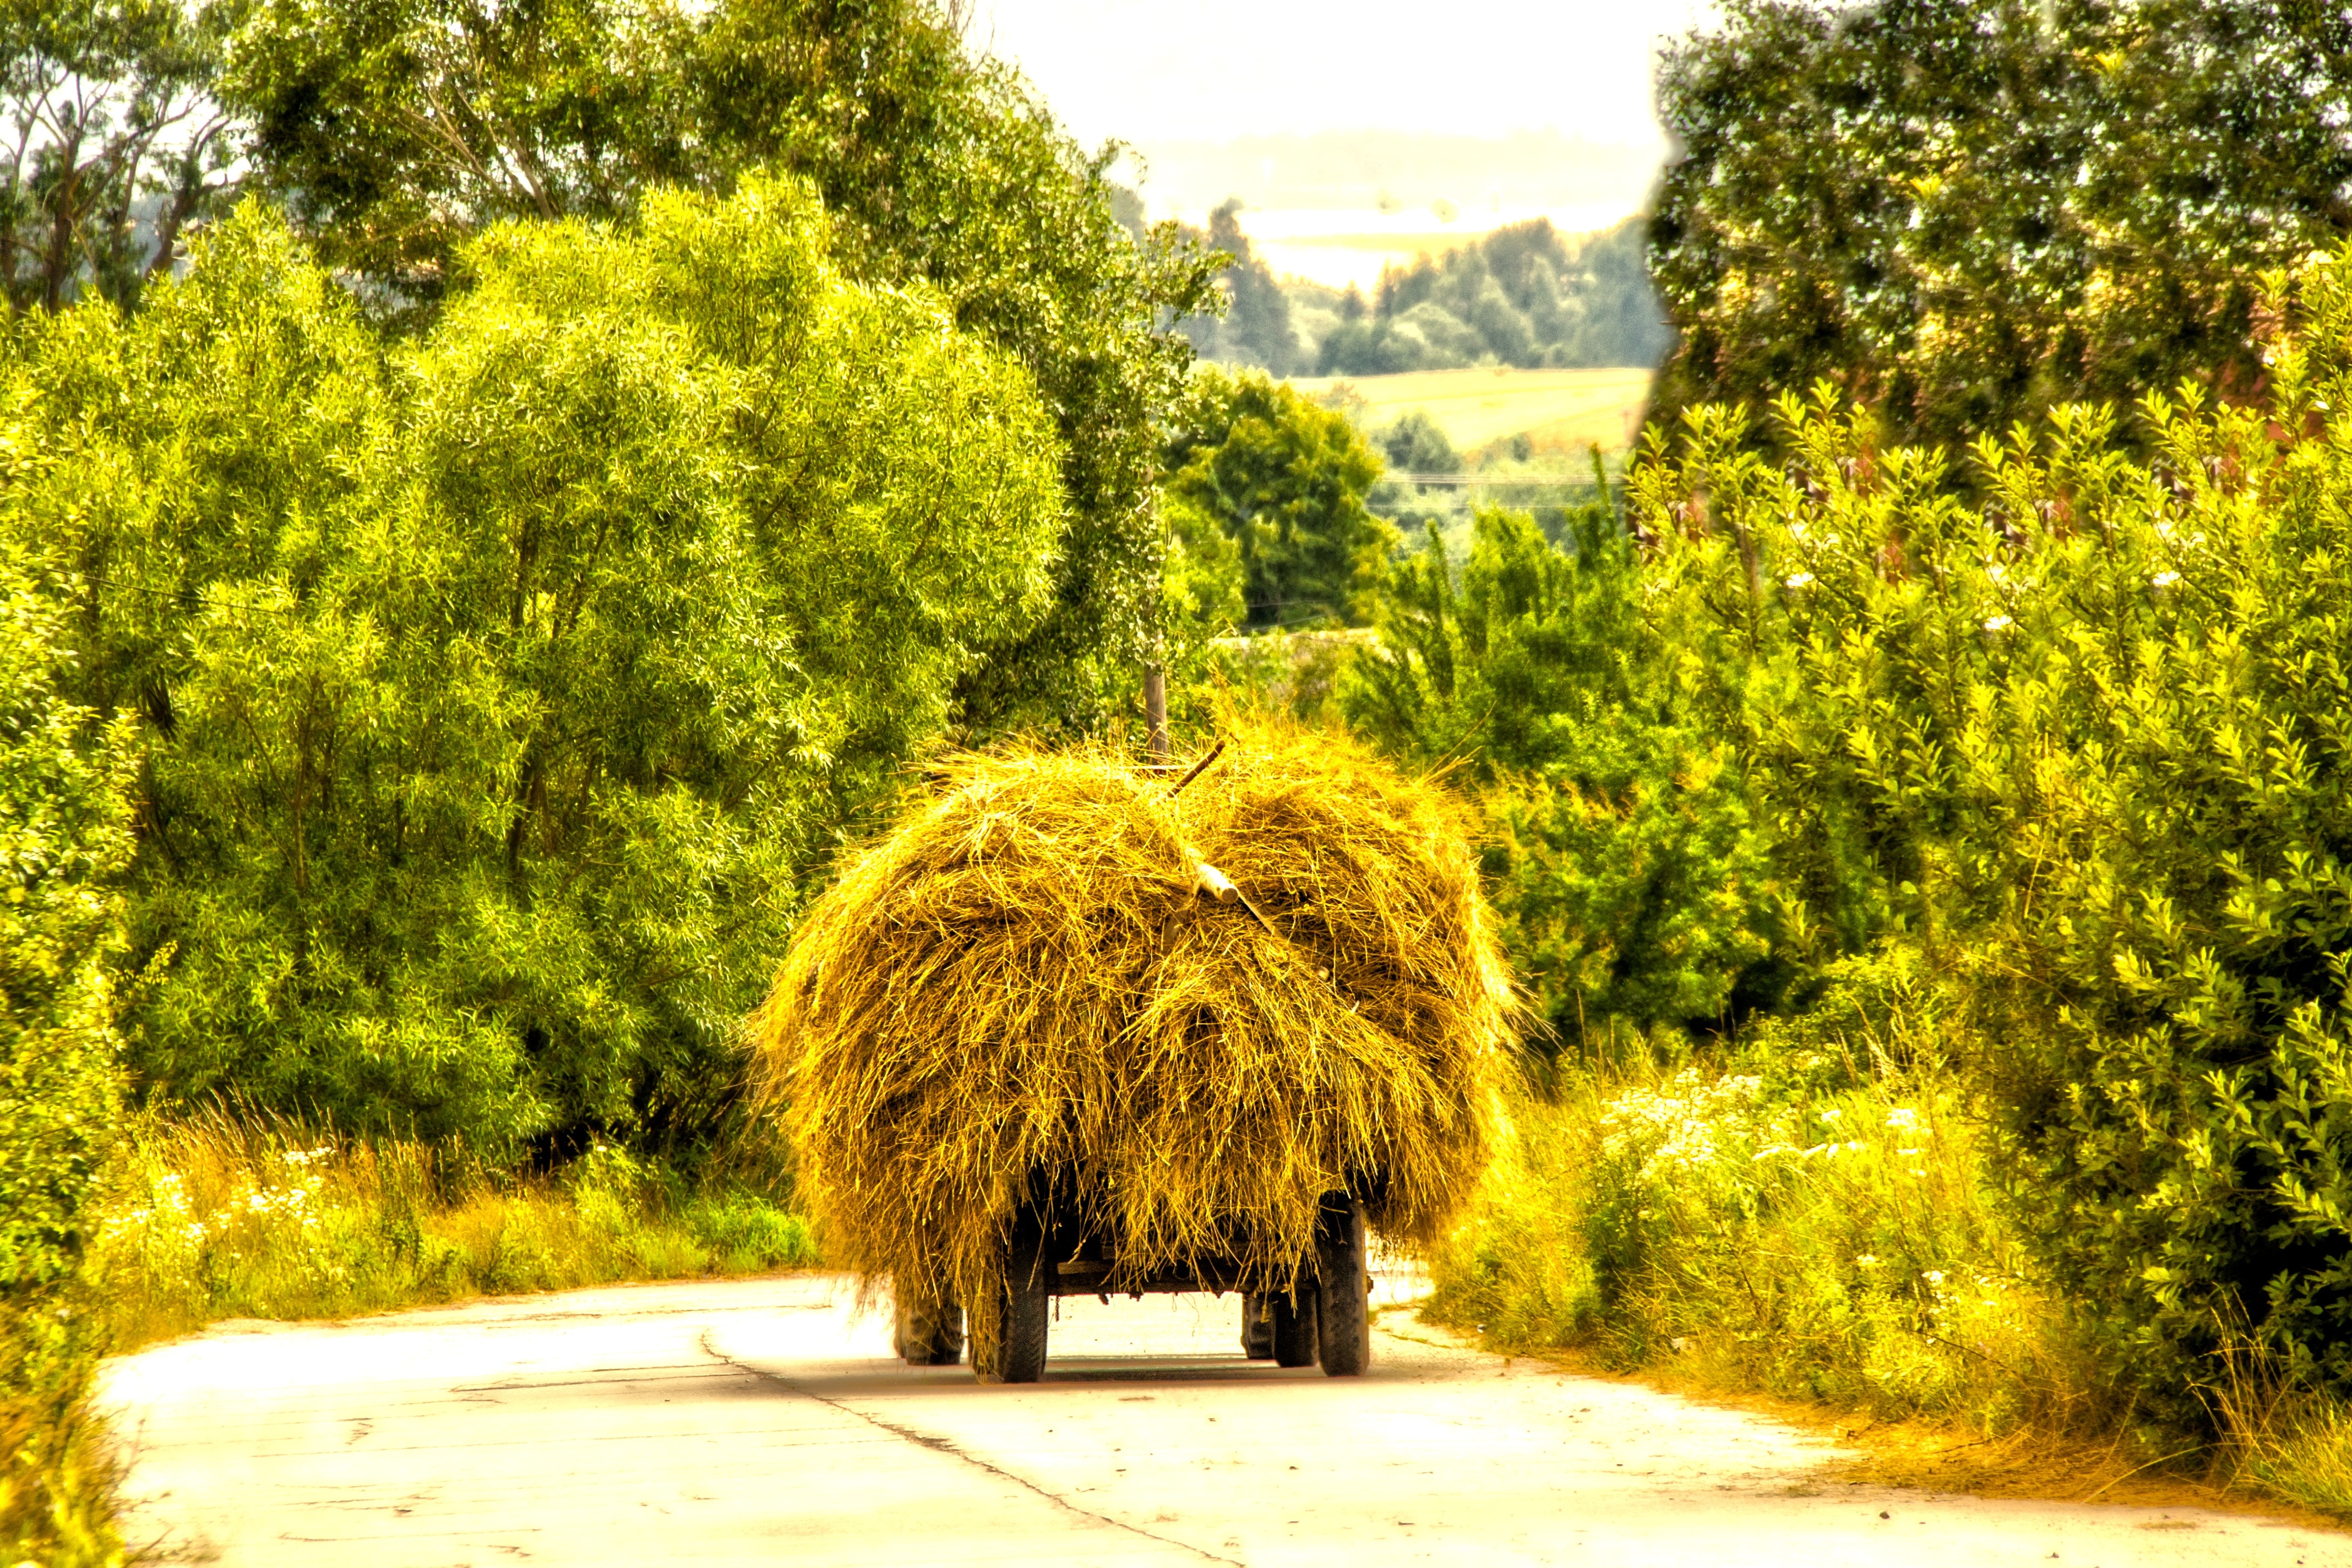 haystack on cart